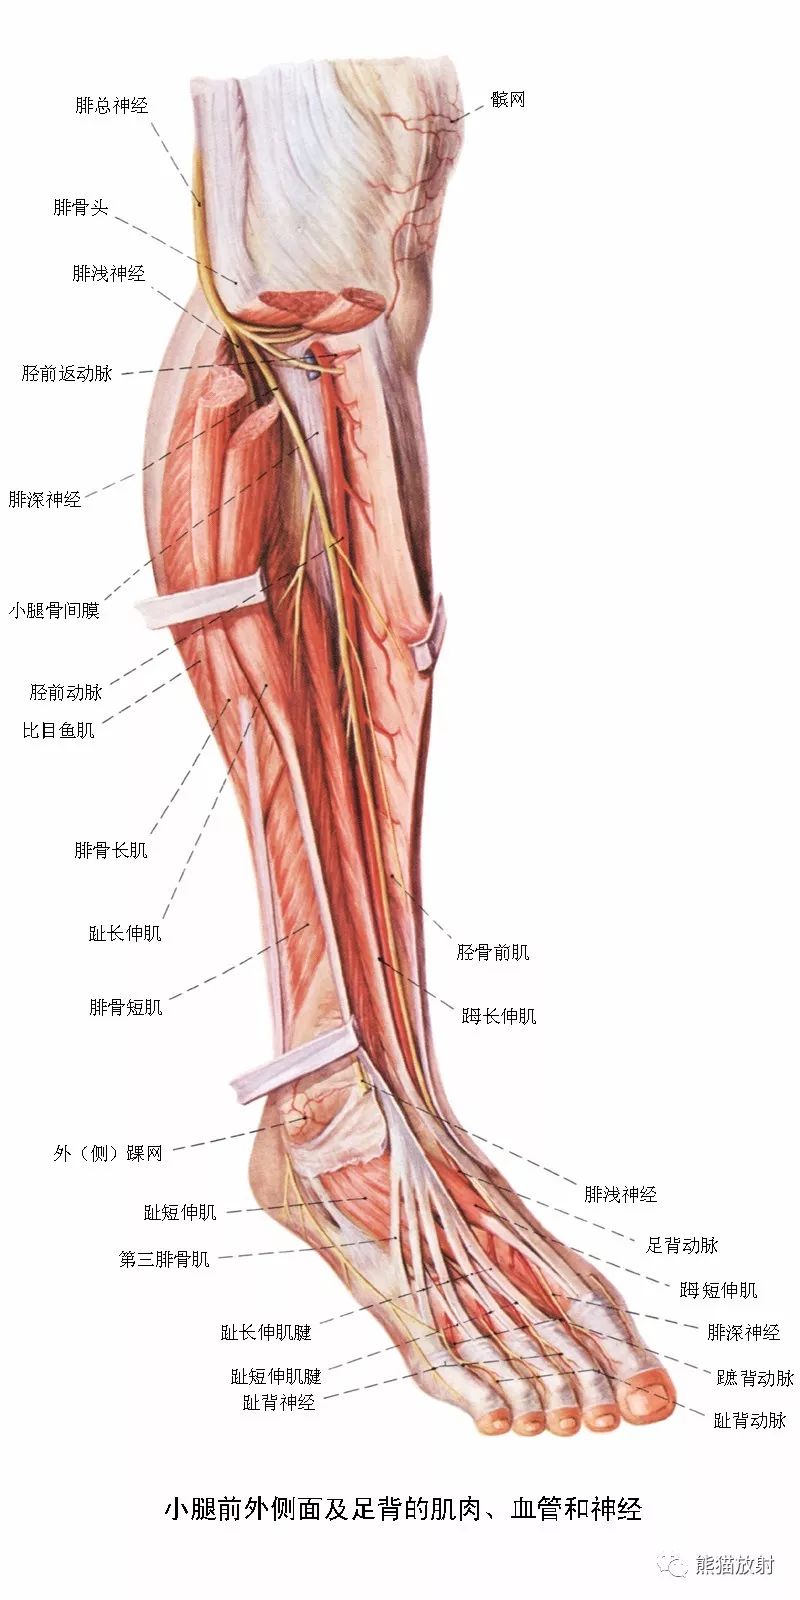 必点收藏丨下肢血管系统解剖cta